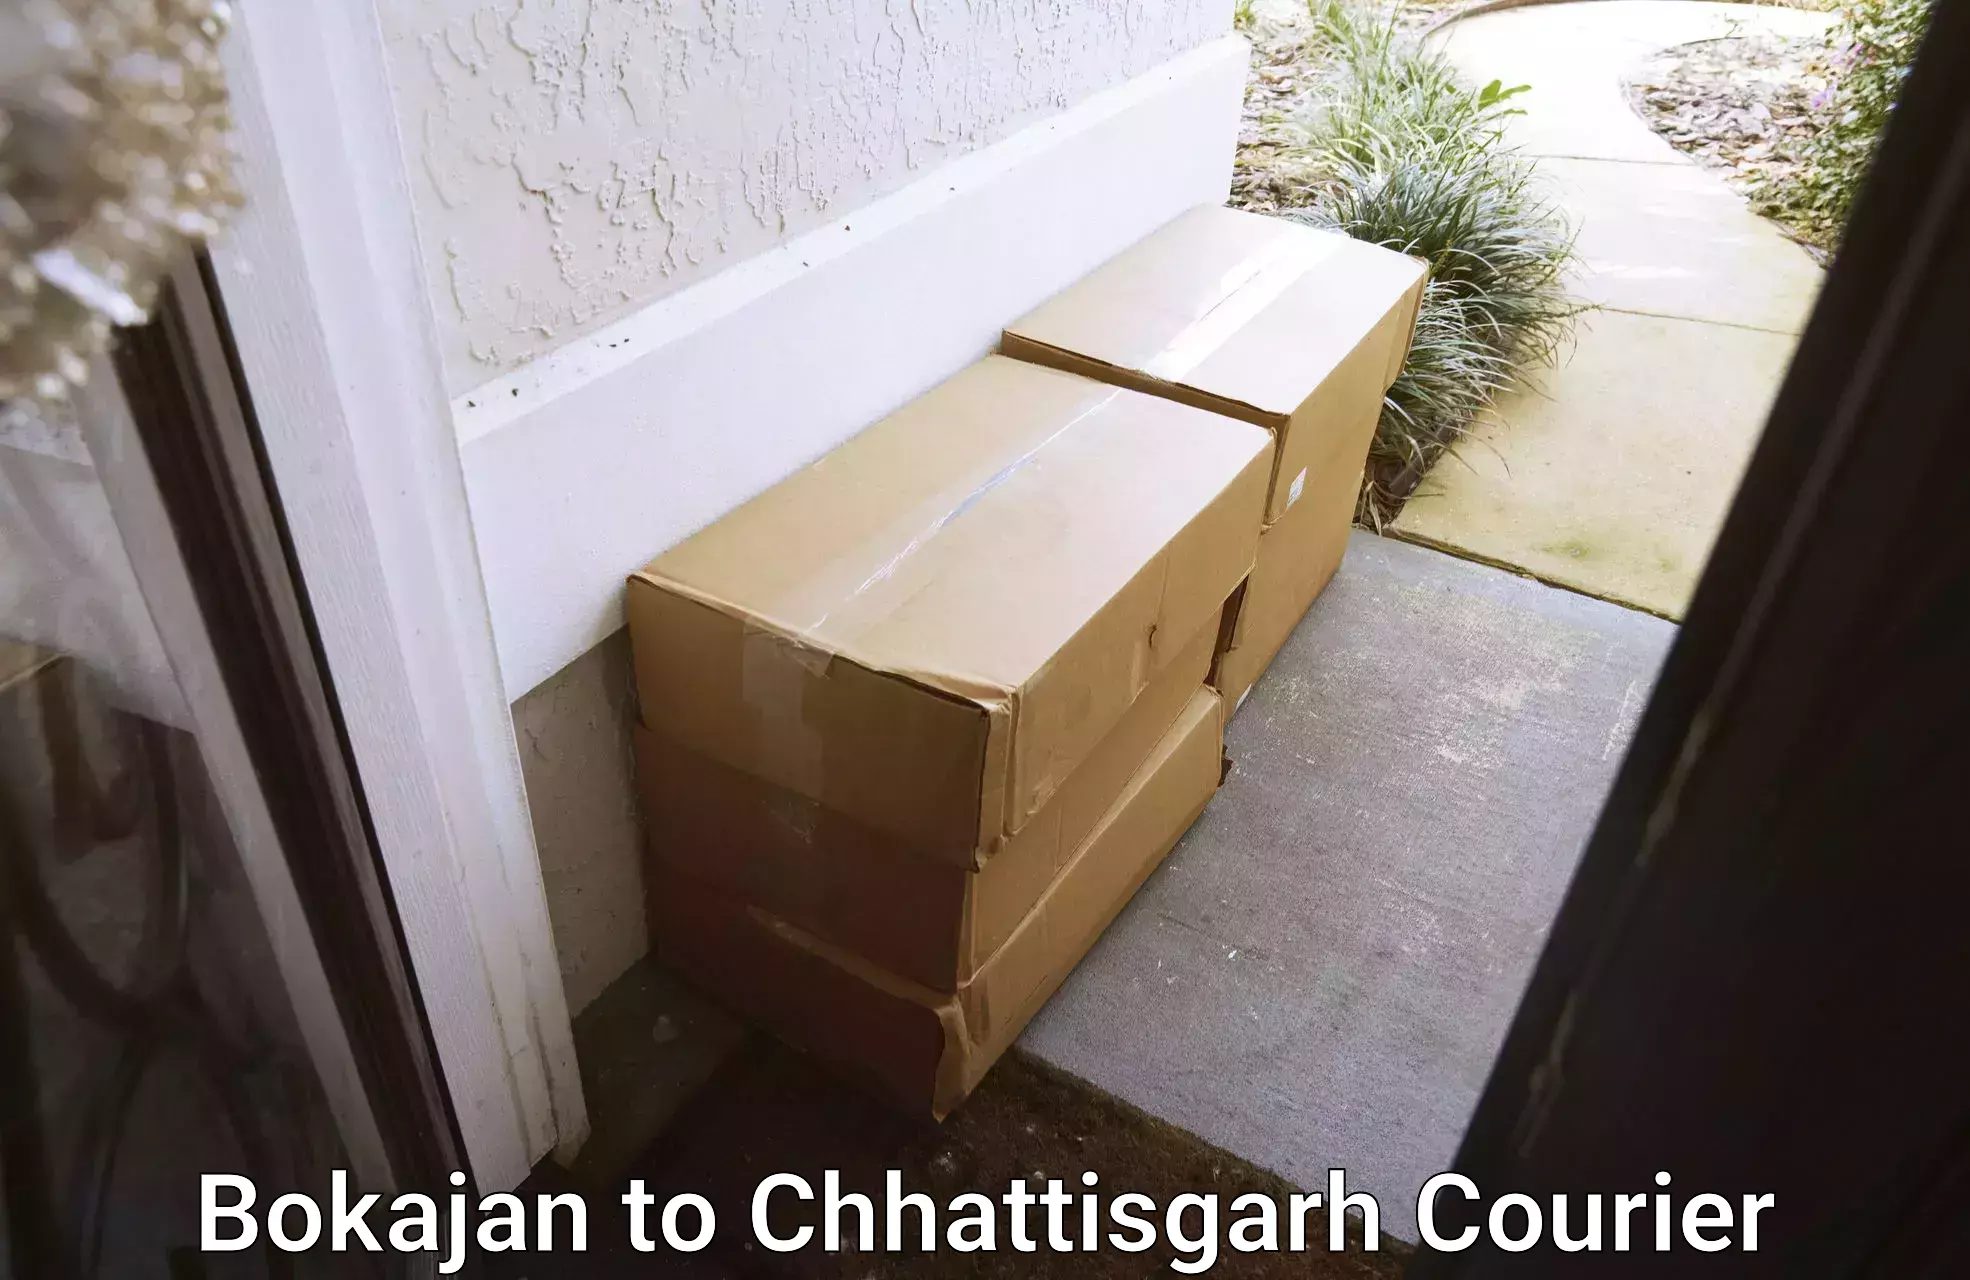 Same-day delivery options Bokajan to Bijapur Chhattisgarh